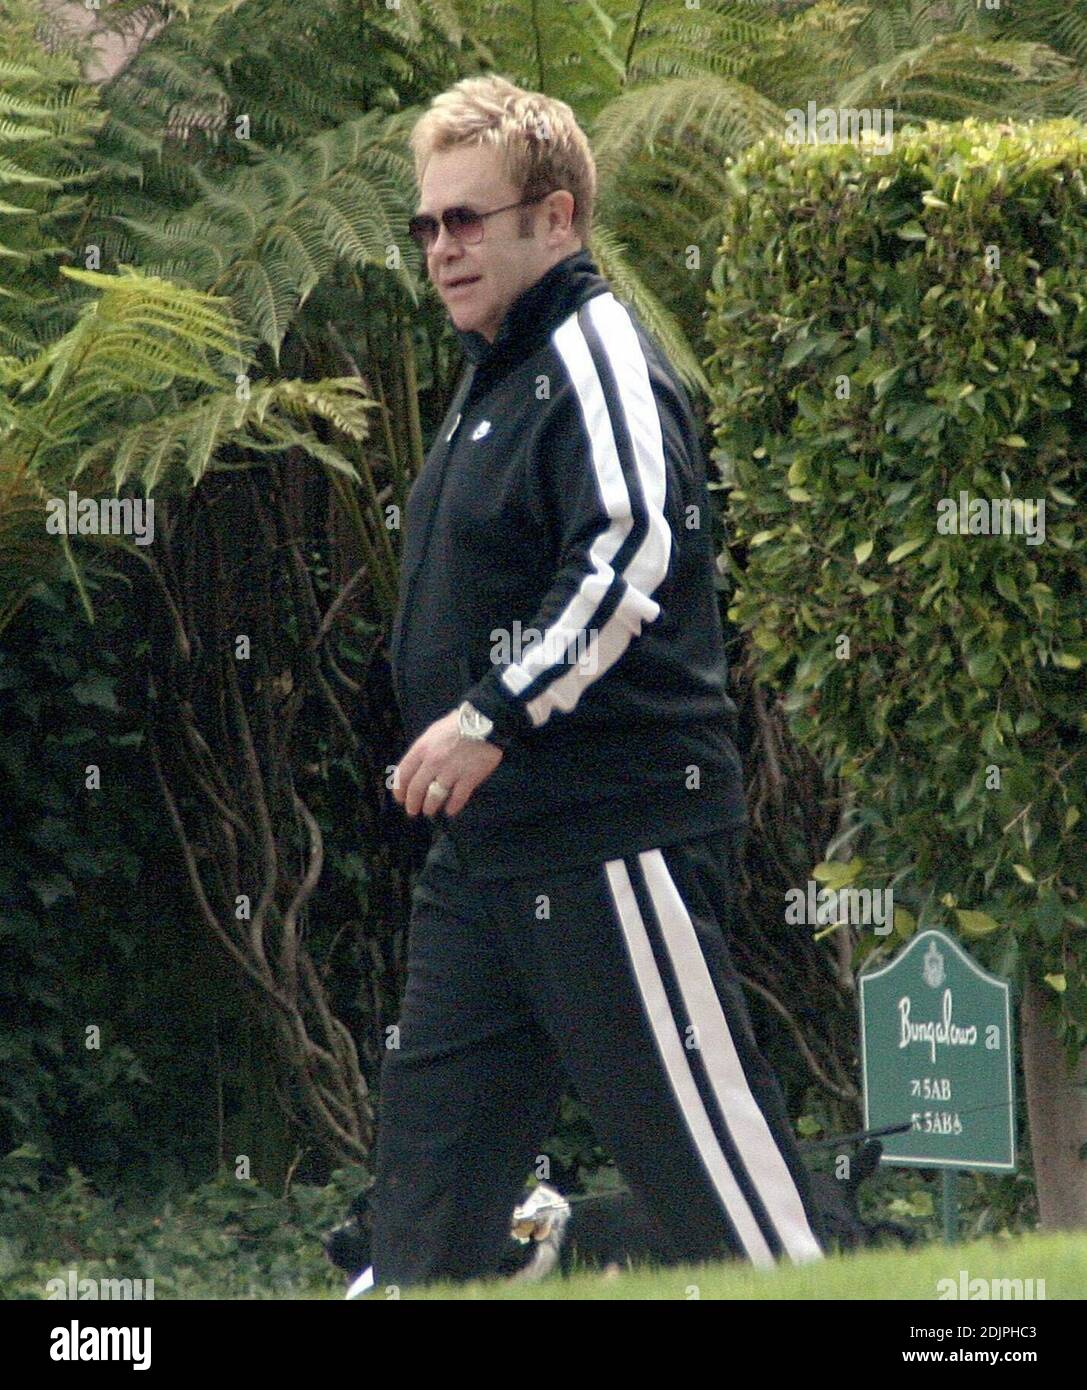 Esclusiva!! Elton John lascia il Beverly Hills Hotel a cinque stelle con un entourage e il suo amato cane. Il cantante stout ha portato un vestito da jogging, ma non è stato visto esercitarsi. 9/22/06 Foto Stock